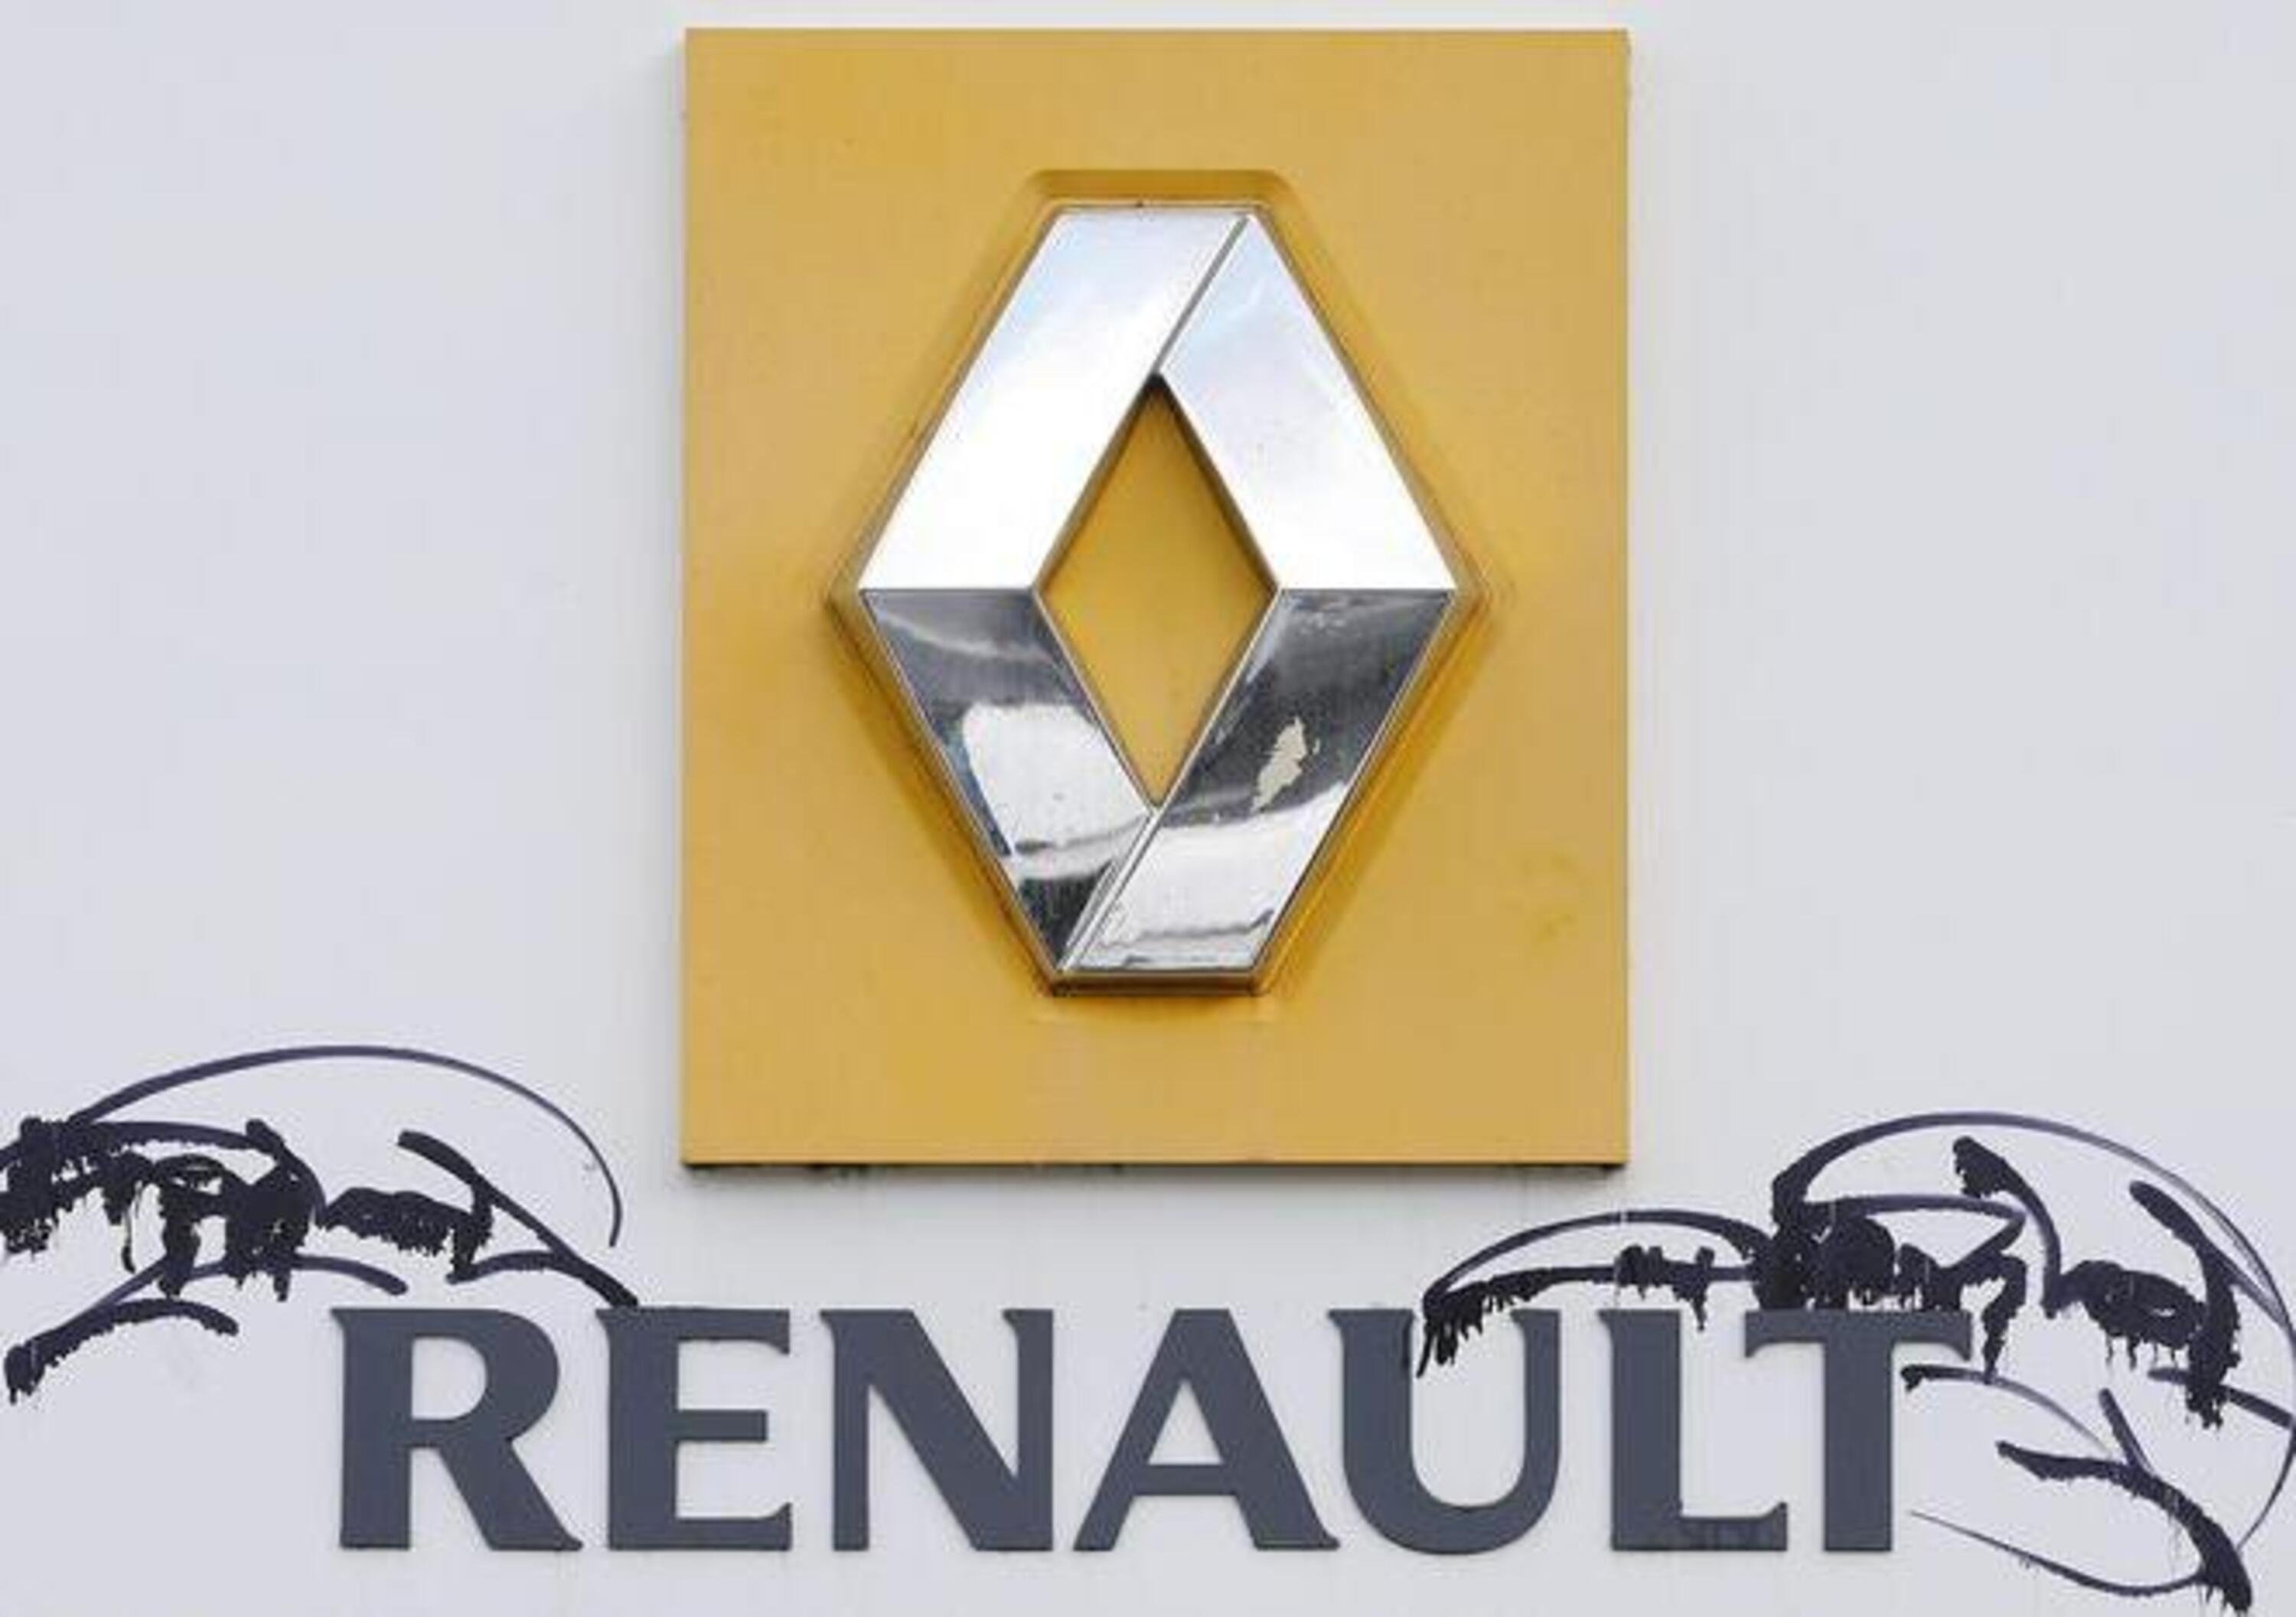 Emissioni Renault, le indagini in Francia potrebbero estendersi ad altri costruttori